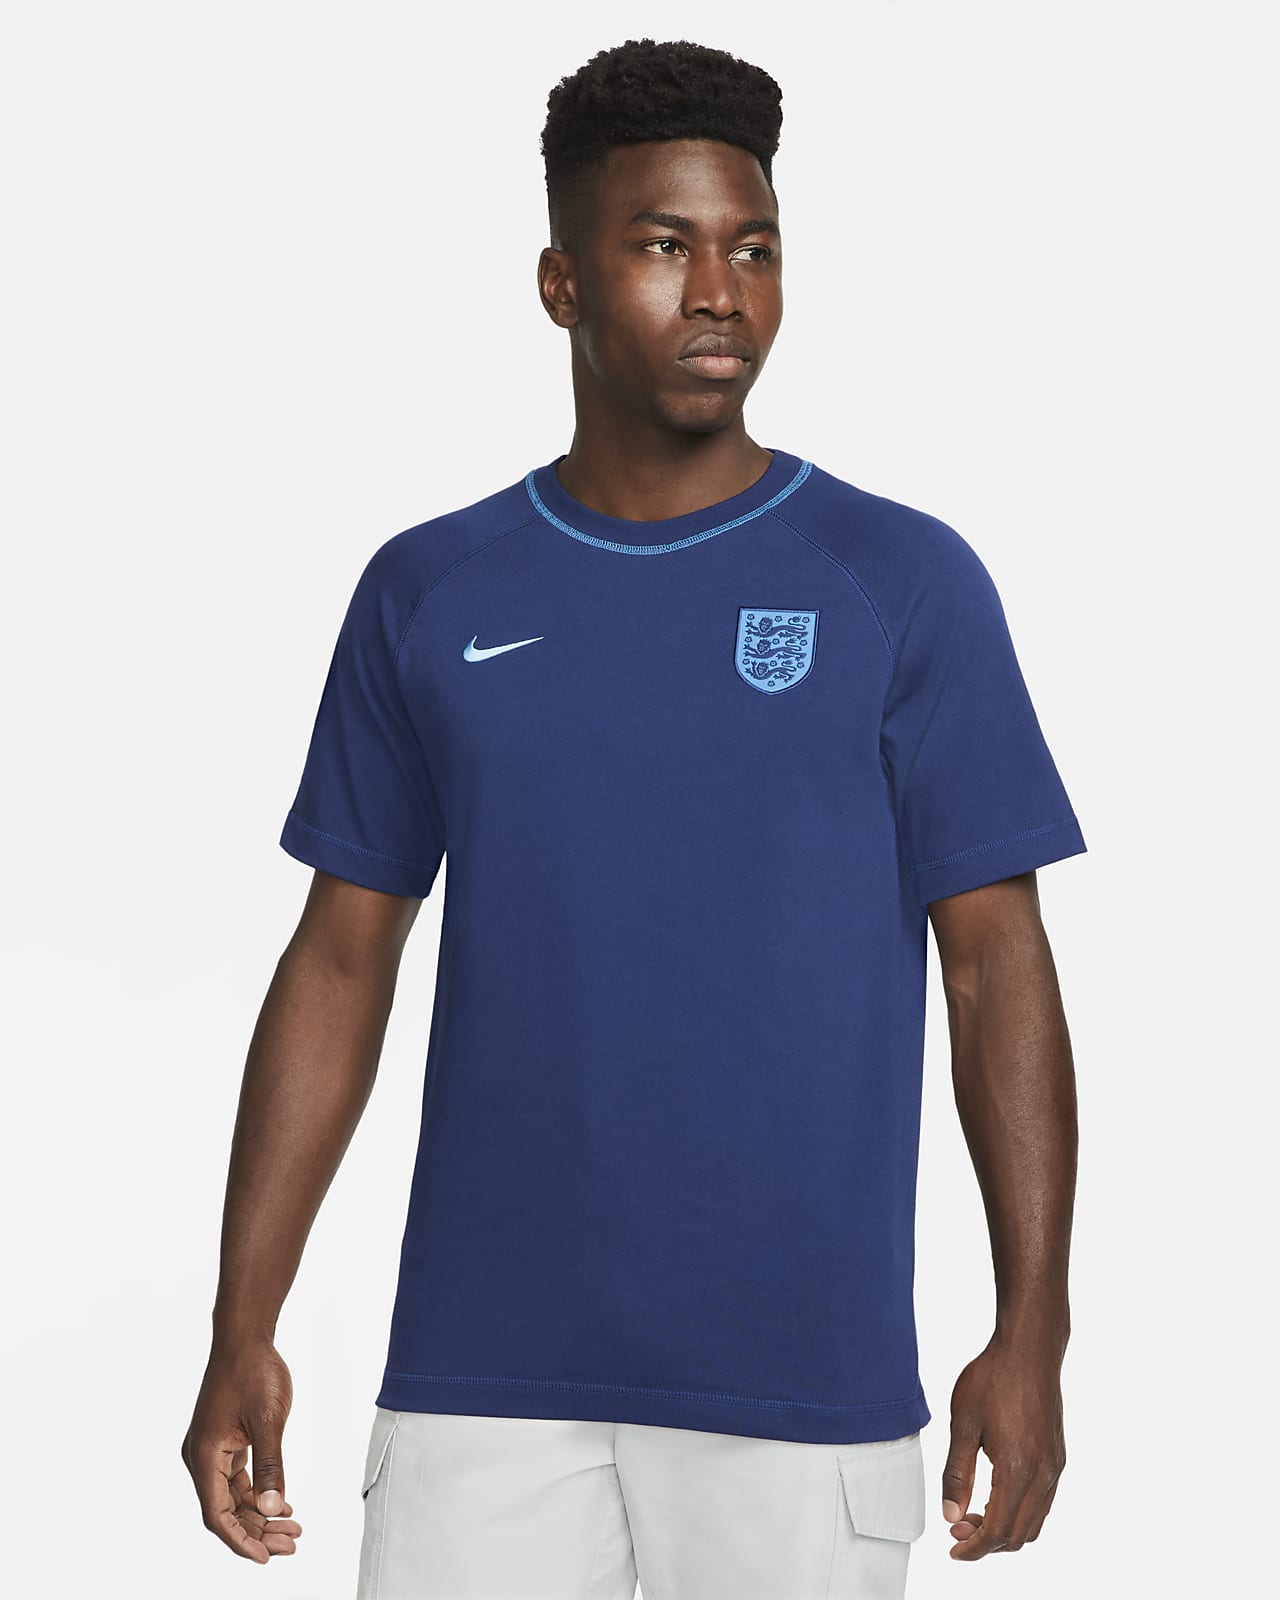 England Men's Soccer Top. Nike.com